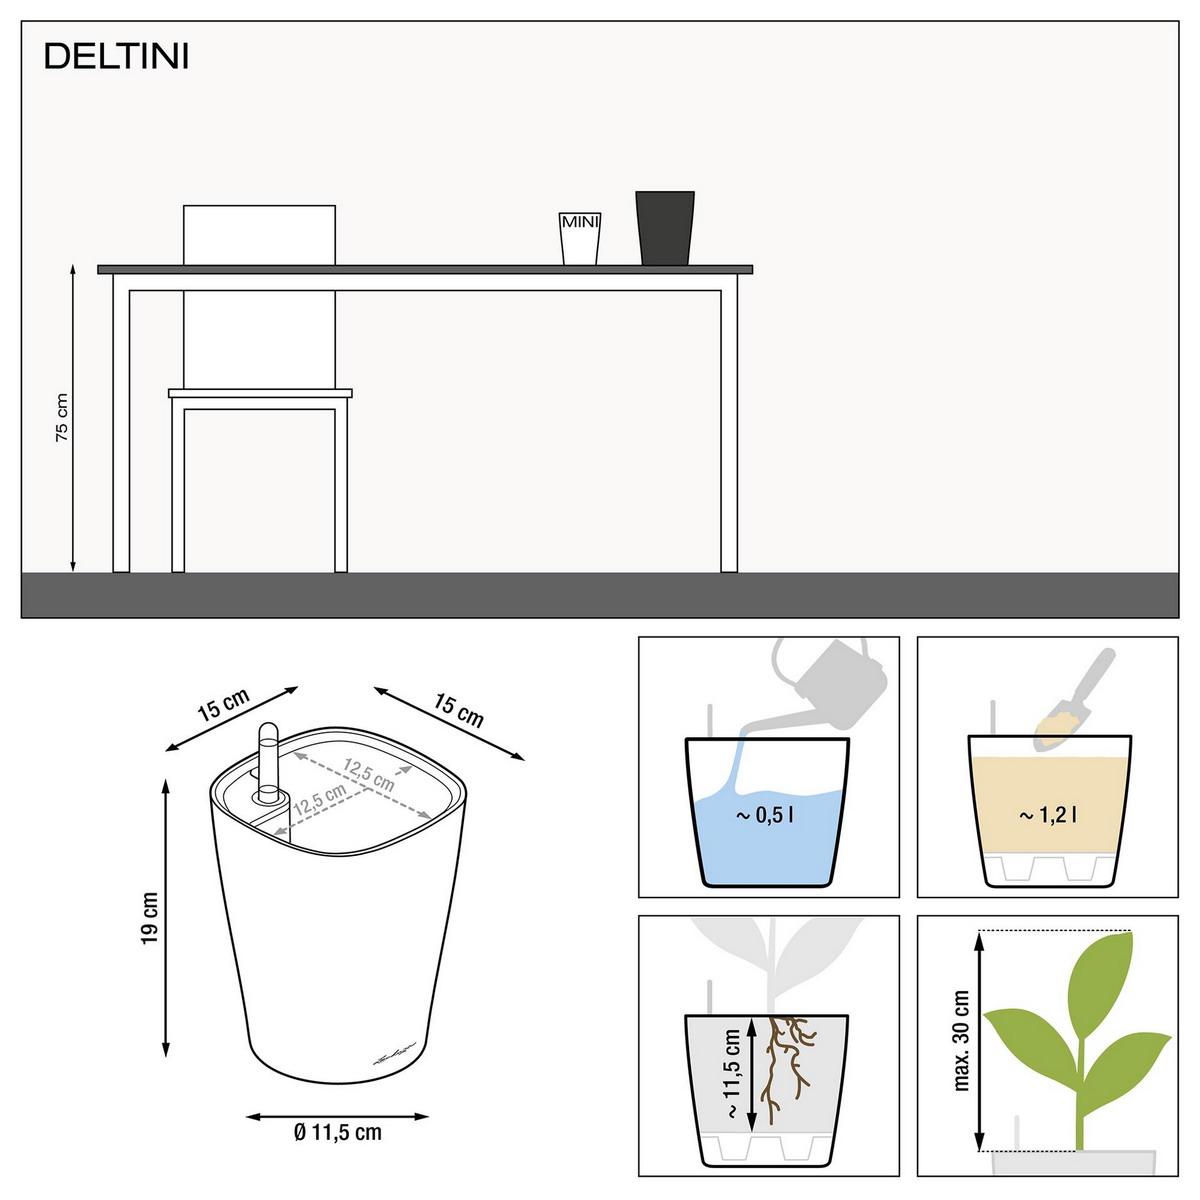 LECHUZA DELTINI|MINI-DELTINI Round Poly Resin Indoor Self-watering Planter